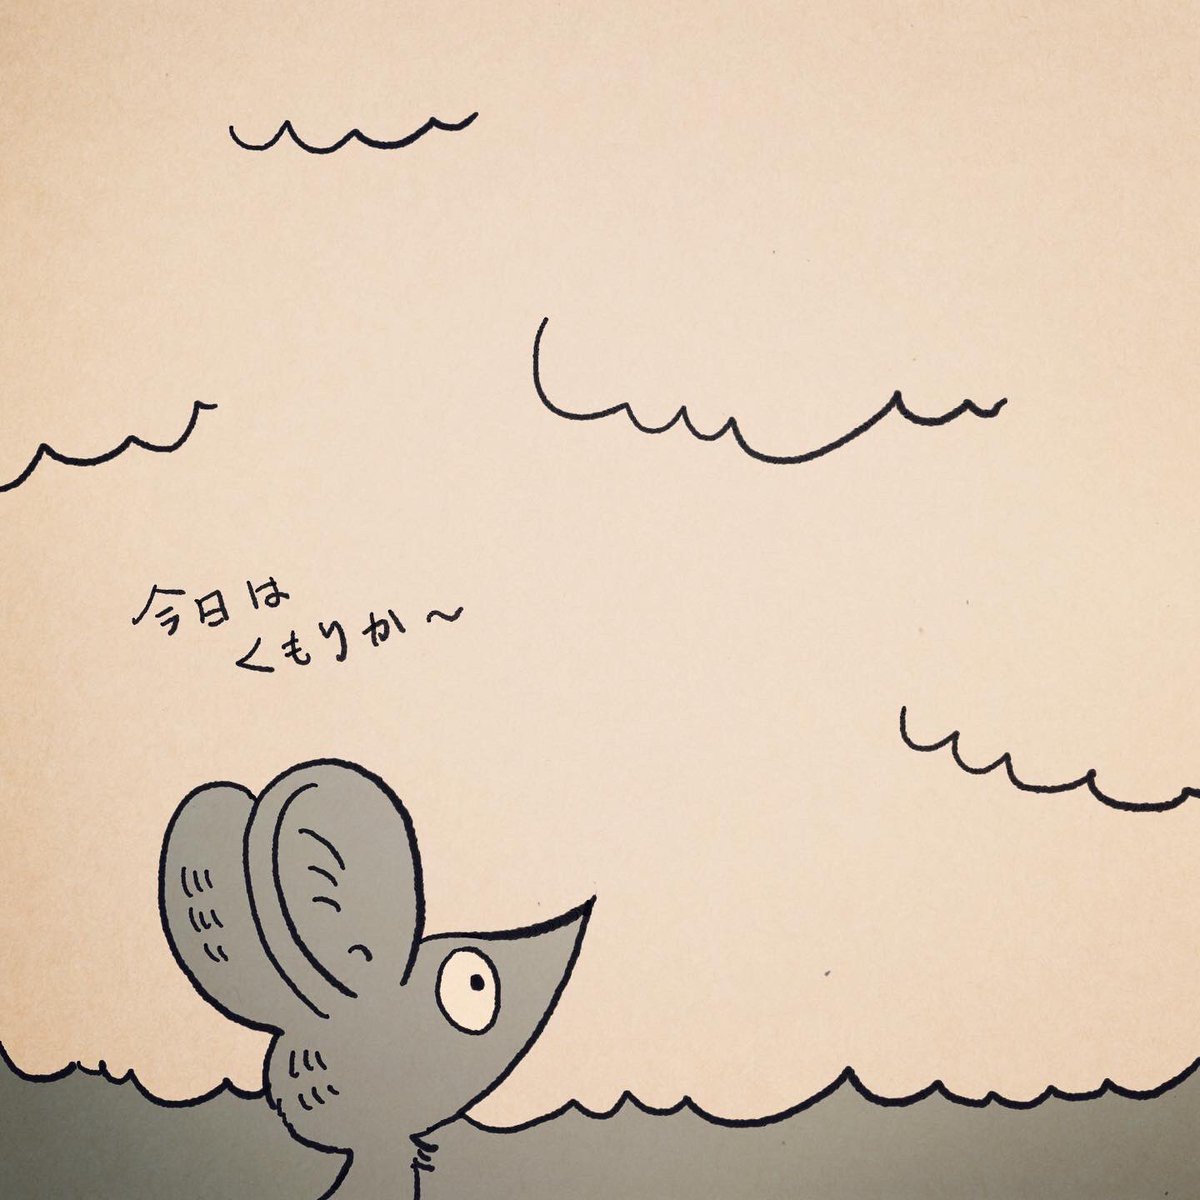 「曇りのち晴れ 」|misato.のイラスト